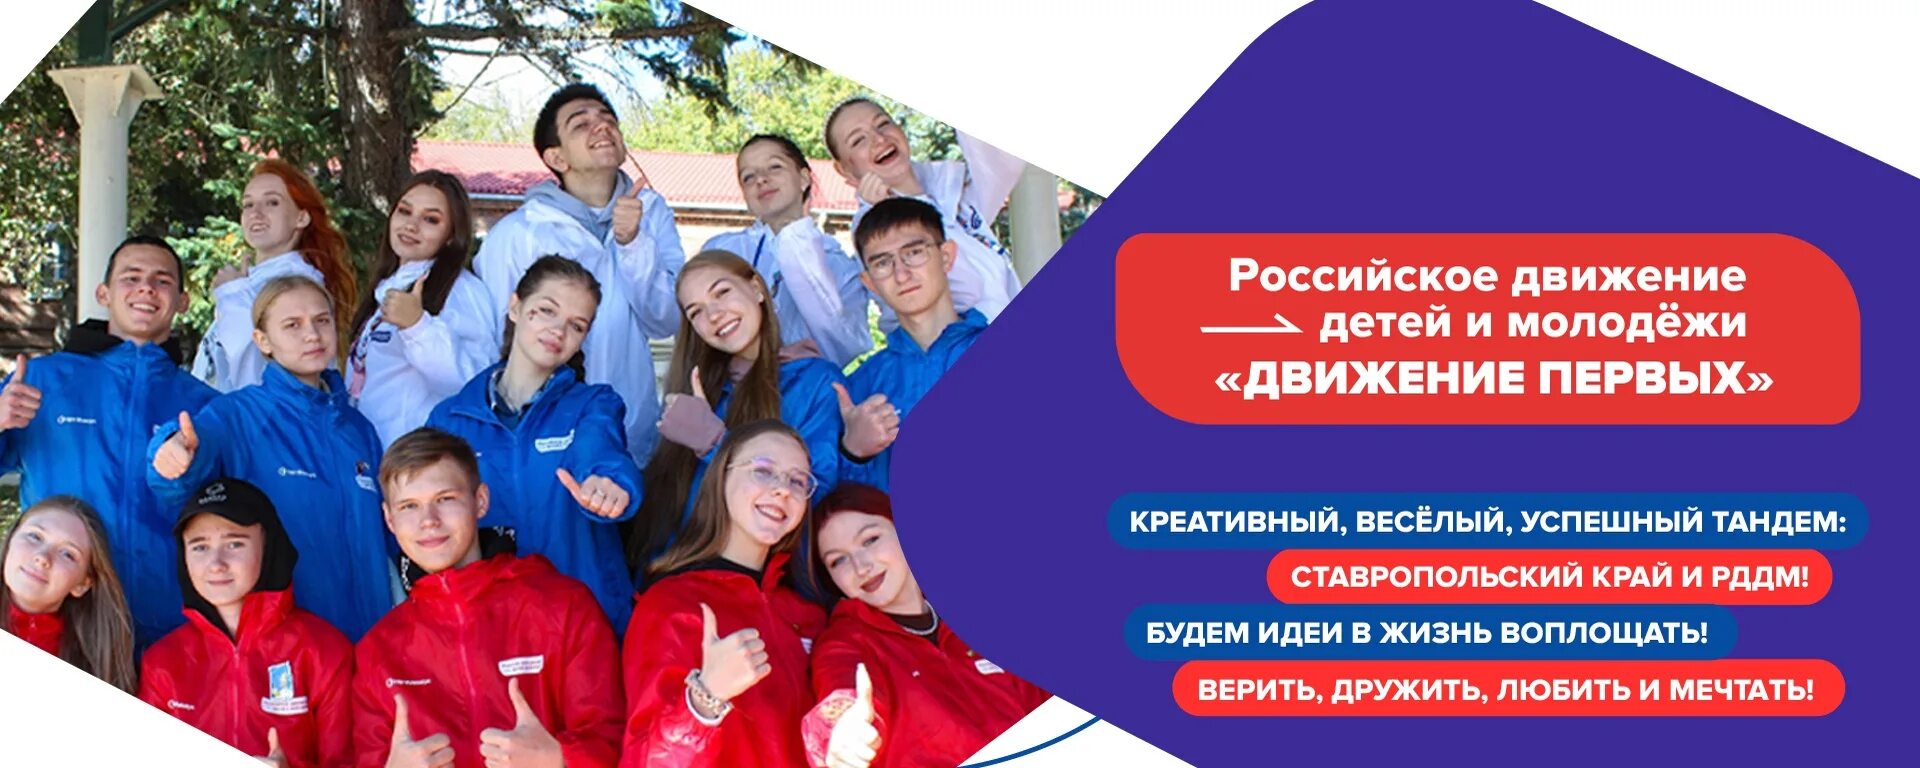 Акция добро в движении движение первых. Российское движение детей и молодежи. Детские и молодежные движения. Детское и молодежное движение это. Рддм- российское движение детей и молодежи «движение первых».